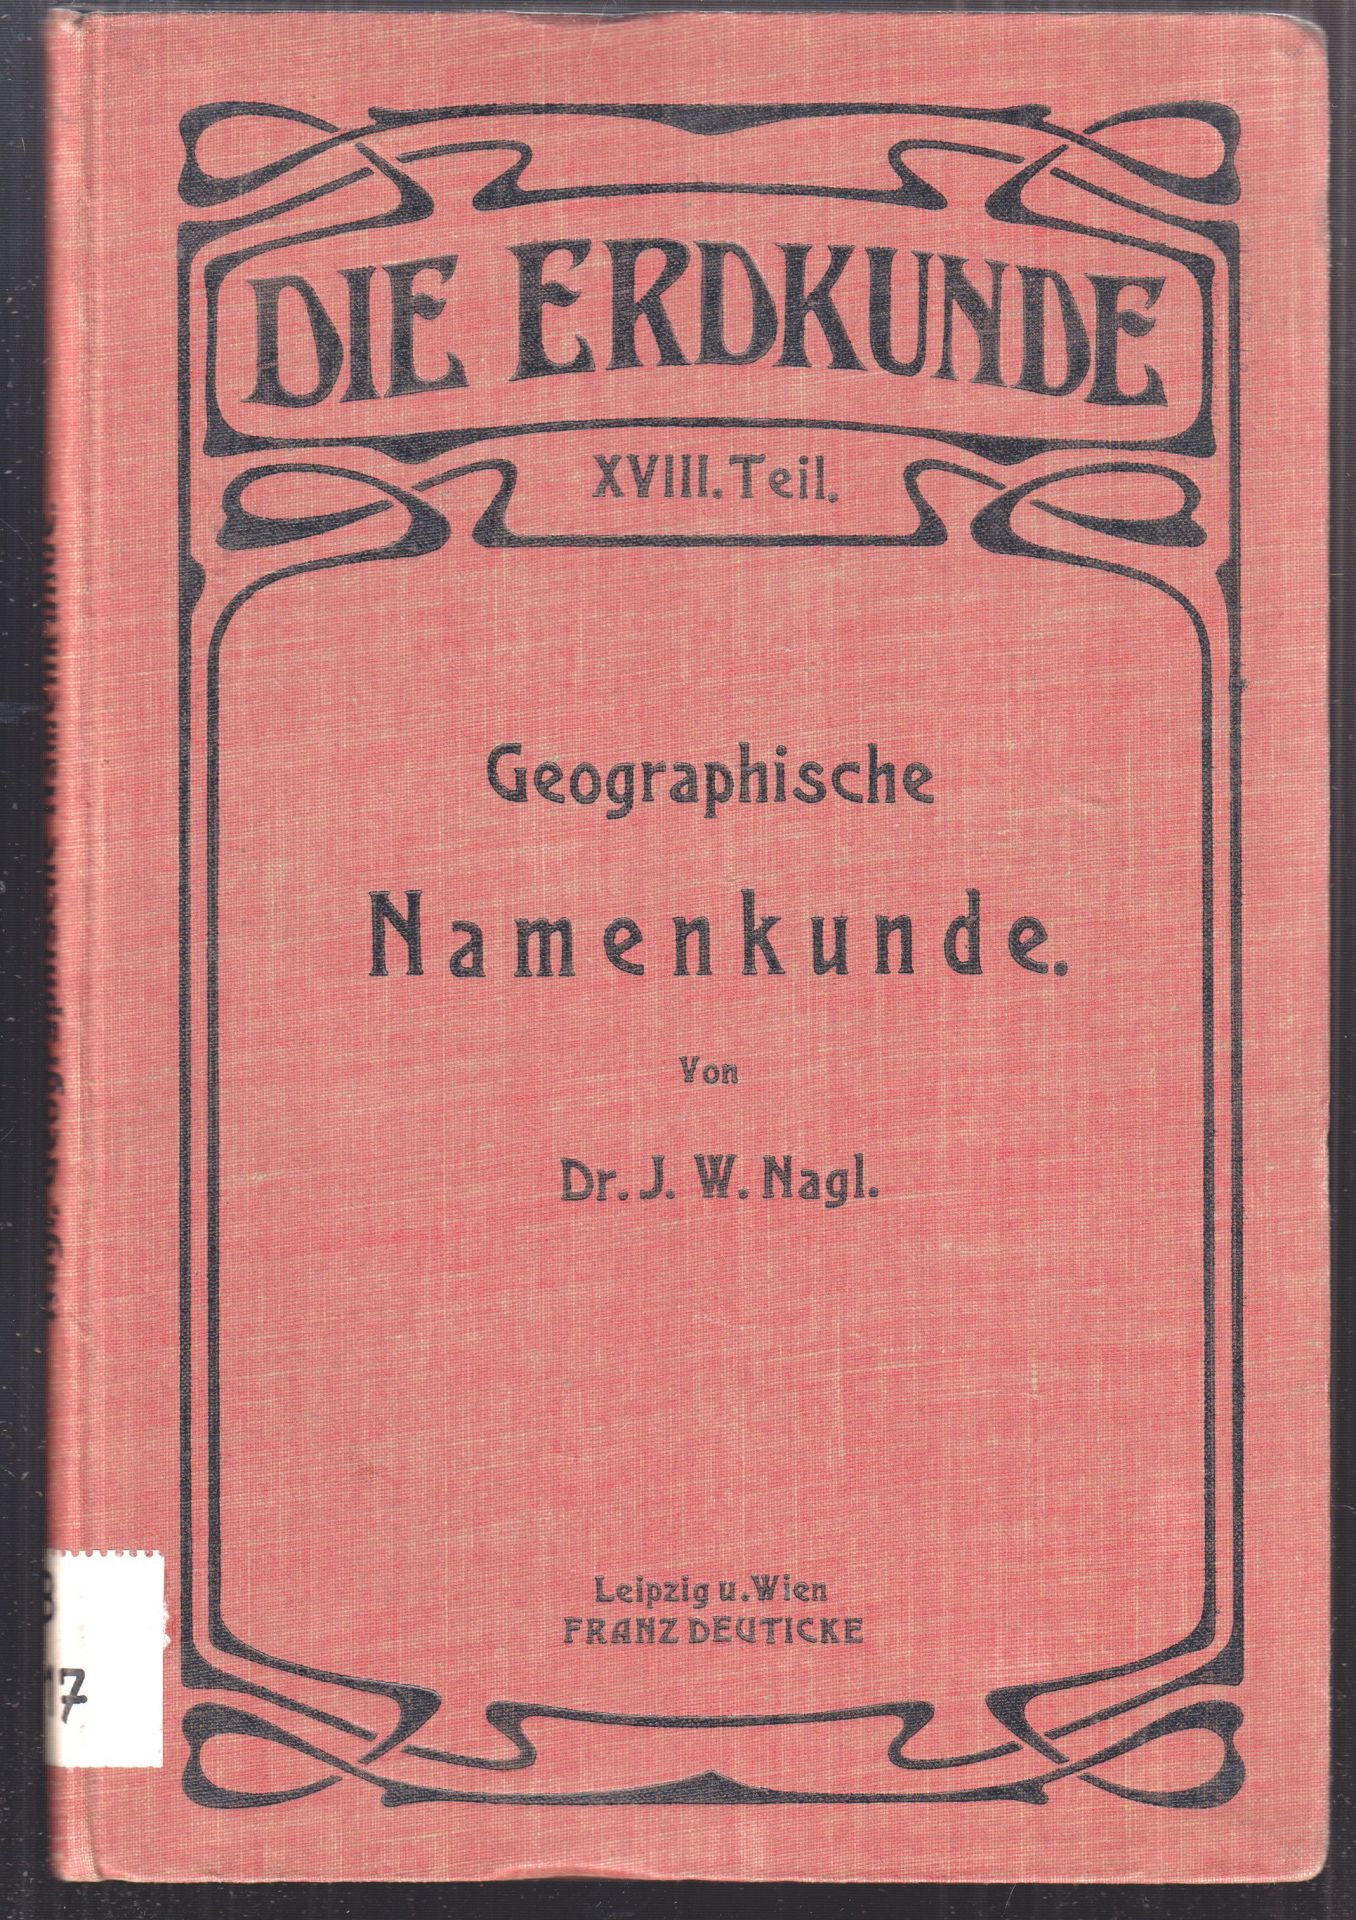 NAGL, J. W. Geographische Namenkunde. Methodische Anwendung der namenkundlichen Grundstze auf das allgemeiner zugngliche topographische Namensmaterial.